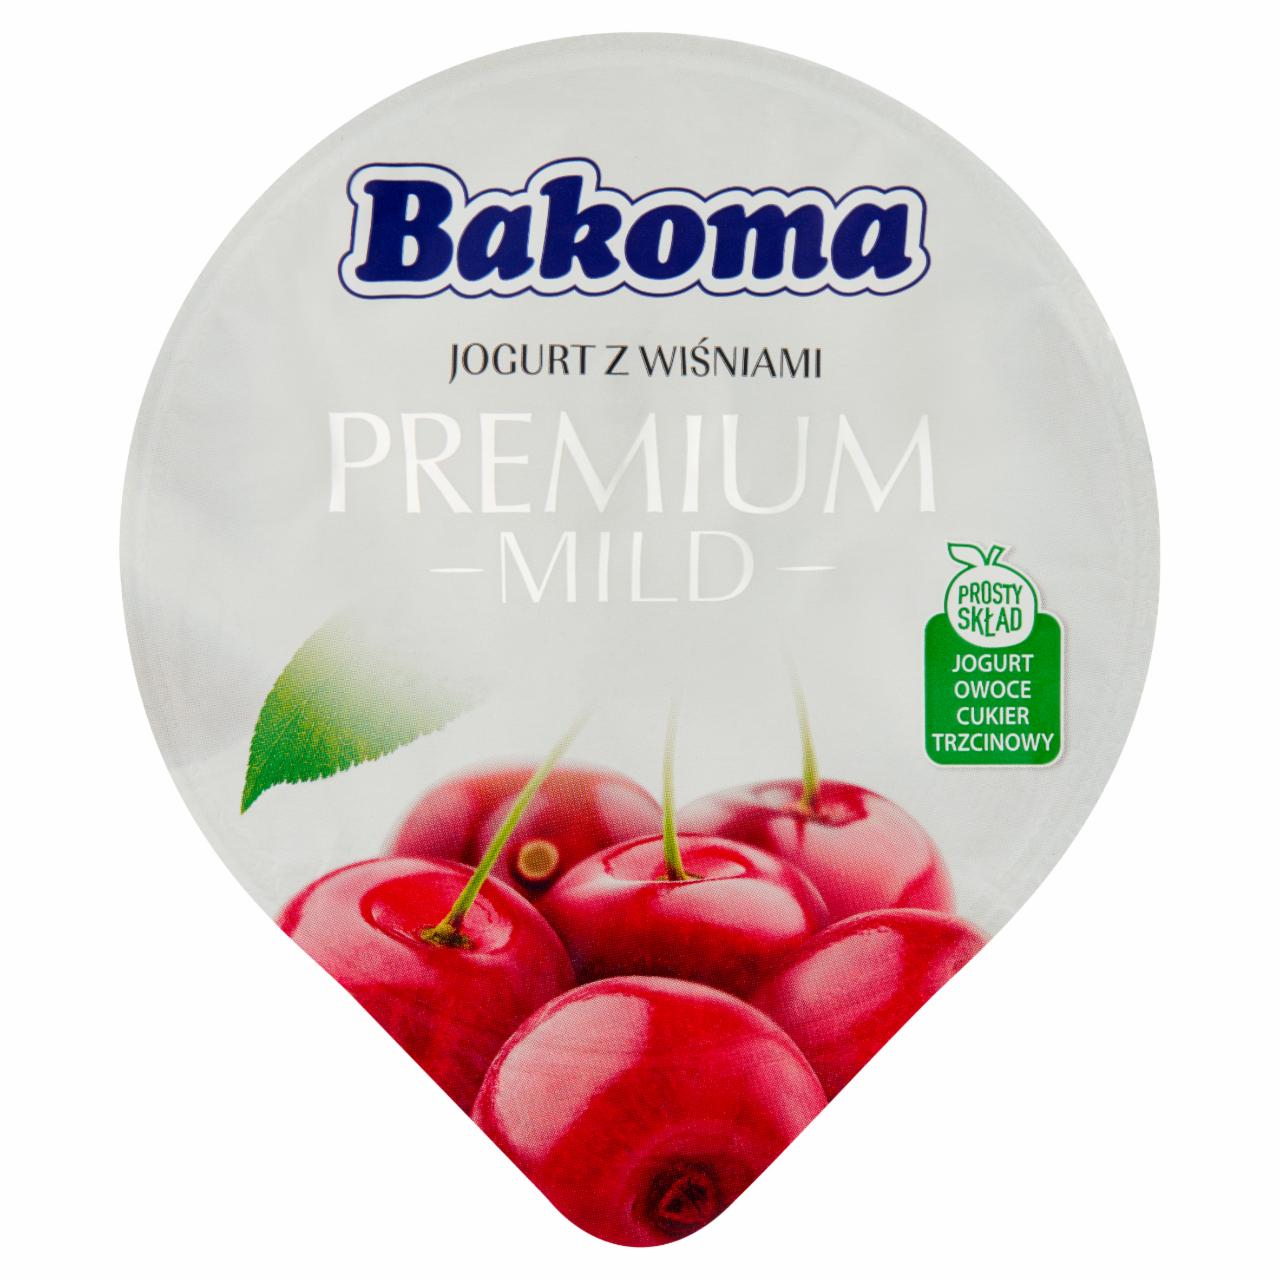 Zdjęcia - Bakoma Premium Mild Jogurt z wiśniami 140 g